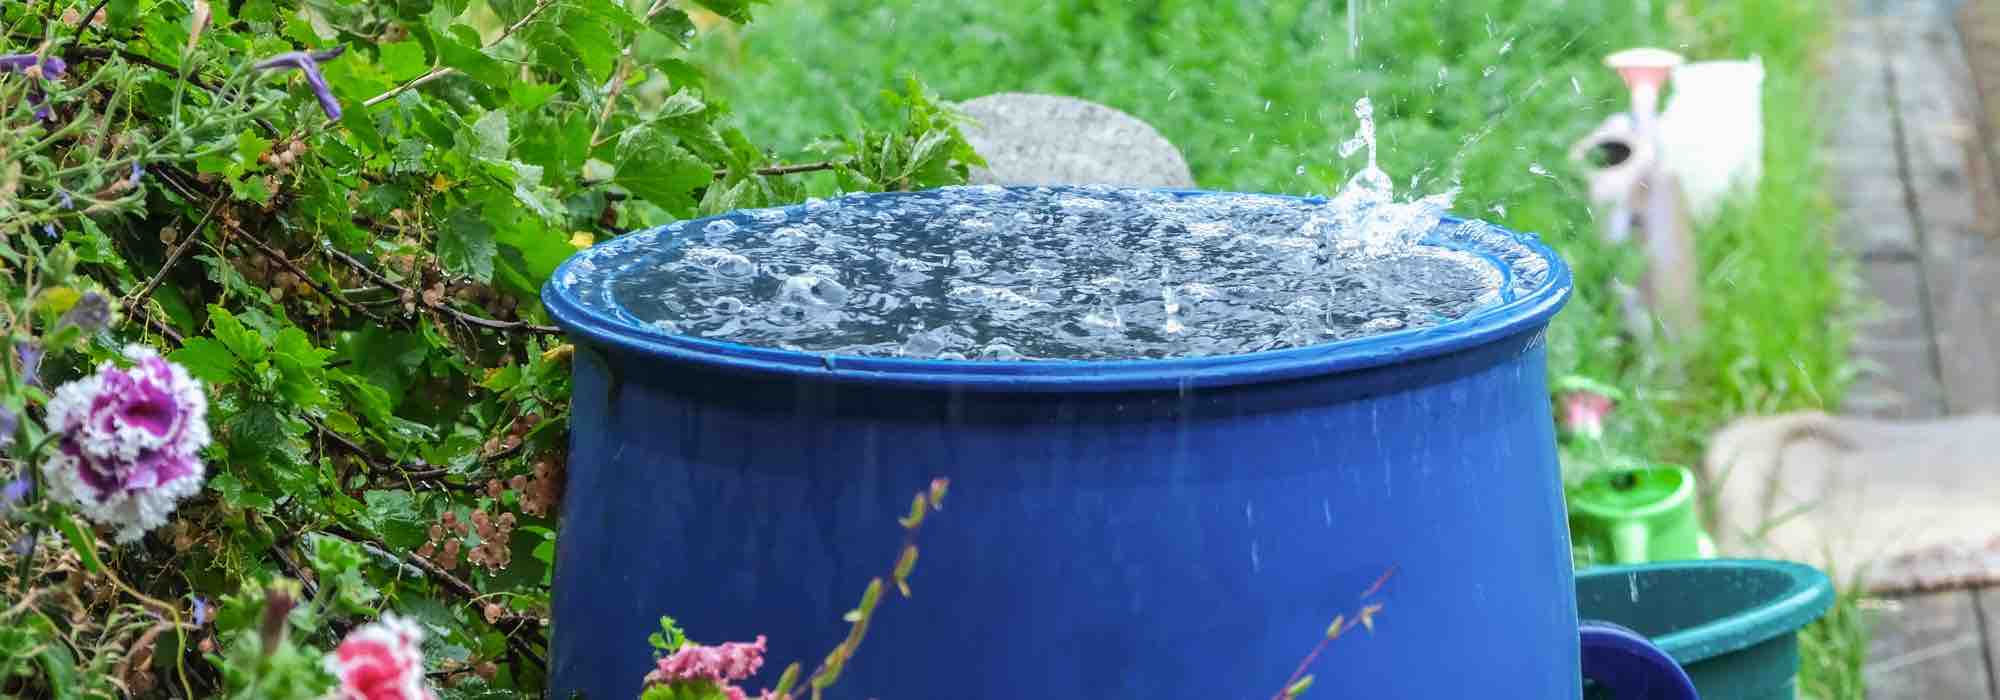 Eau du robinet, eau de pluie ou eau déminéralisée : laquelle choisir pour arroser les plantes ?